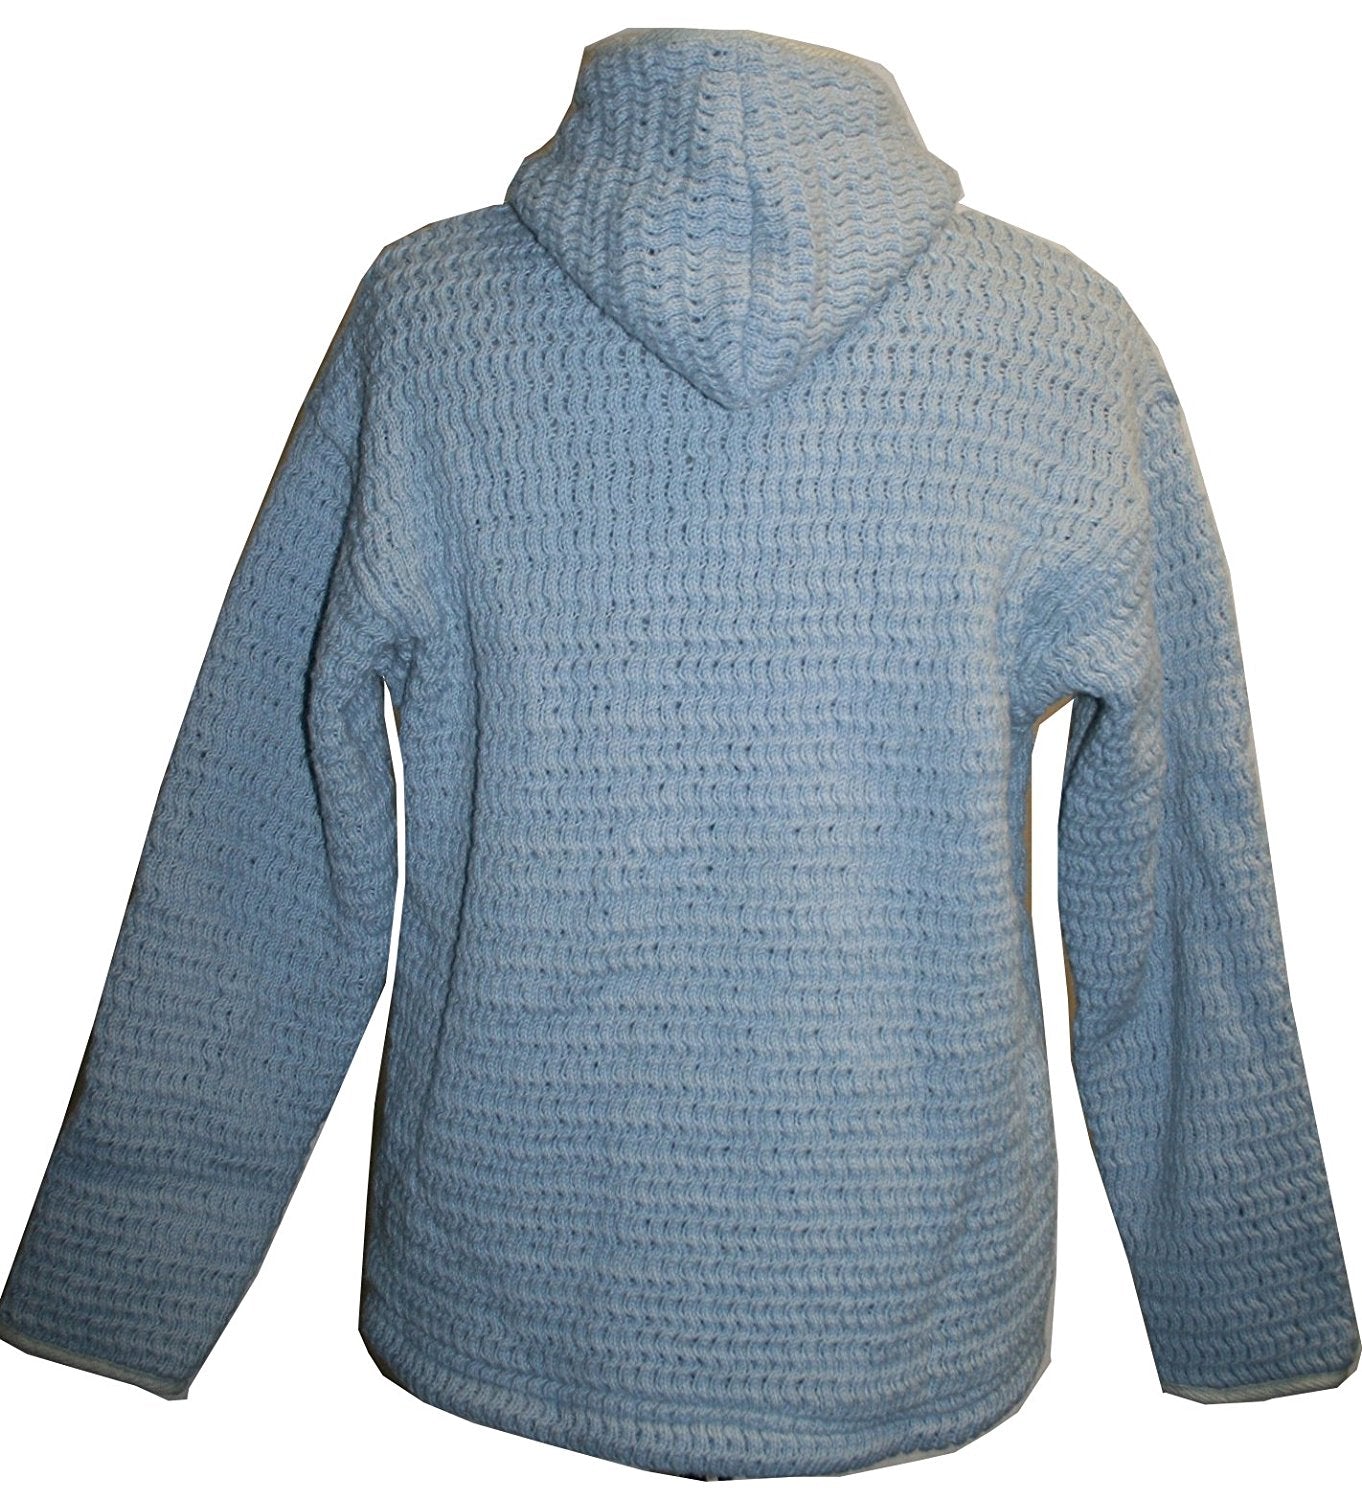 905 WJ Lamb's Wool Hand Knitted Fleece Lined Sherpa Jacket Sweater ...